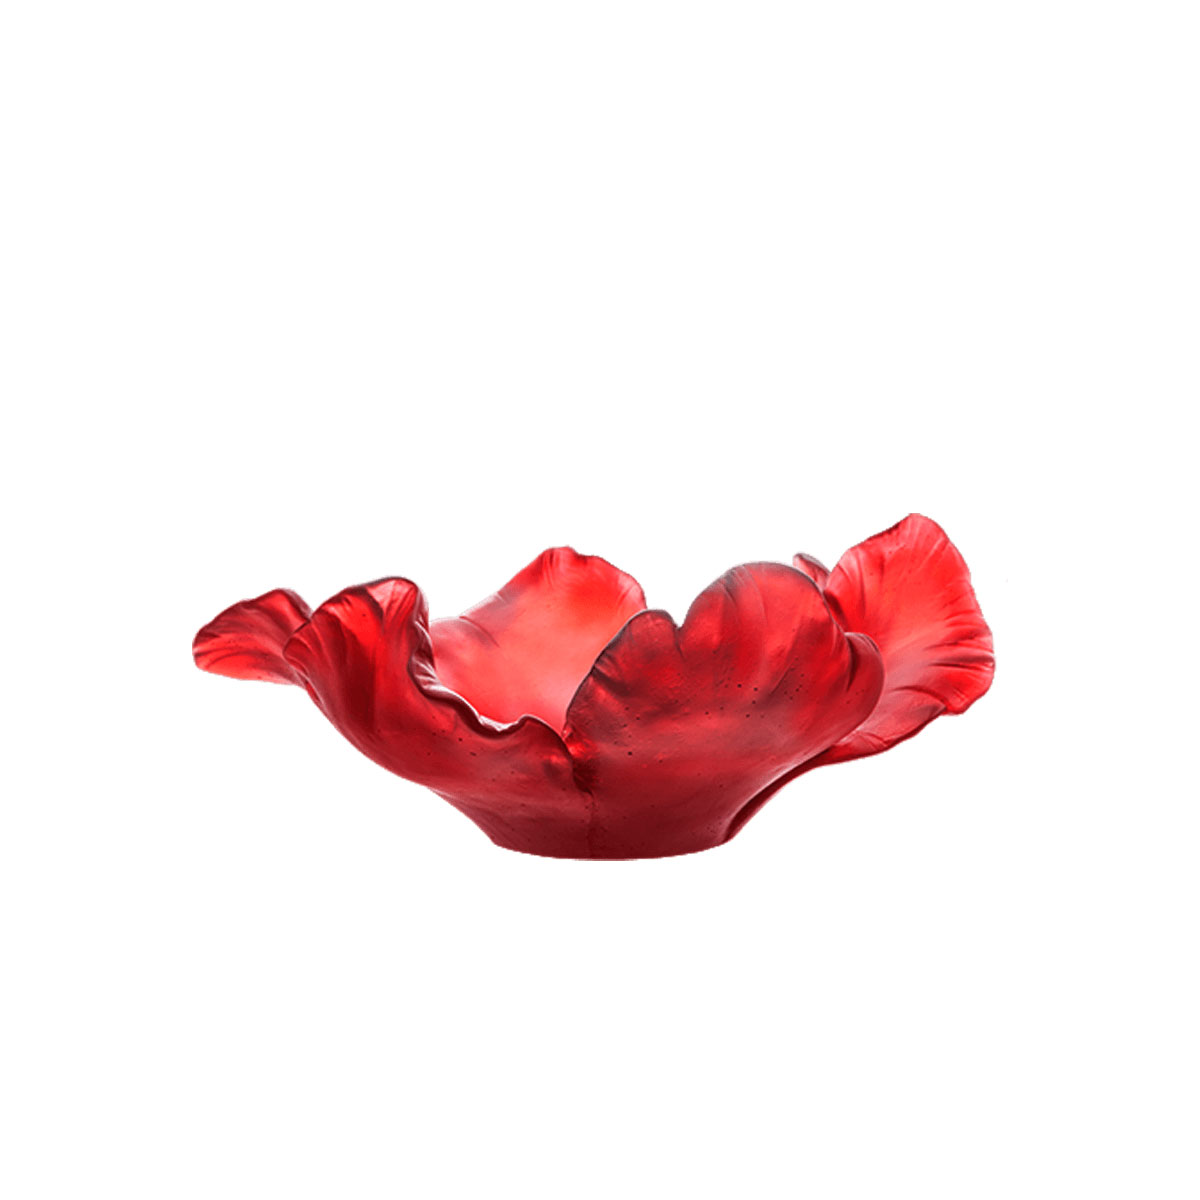 Daum 11.8" Tulip Bowl in Red